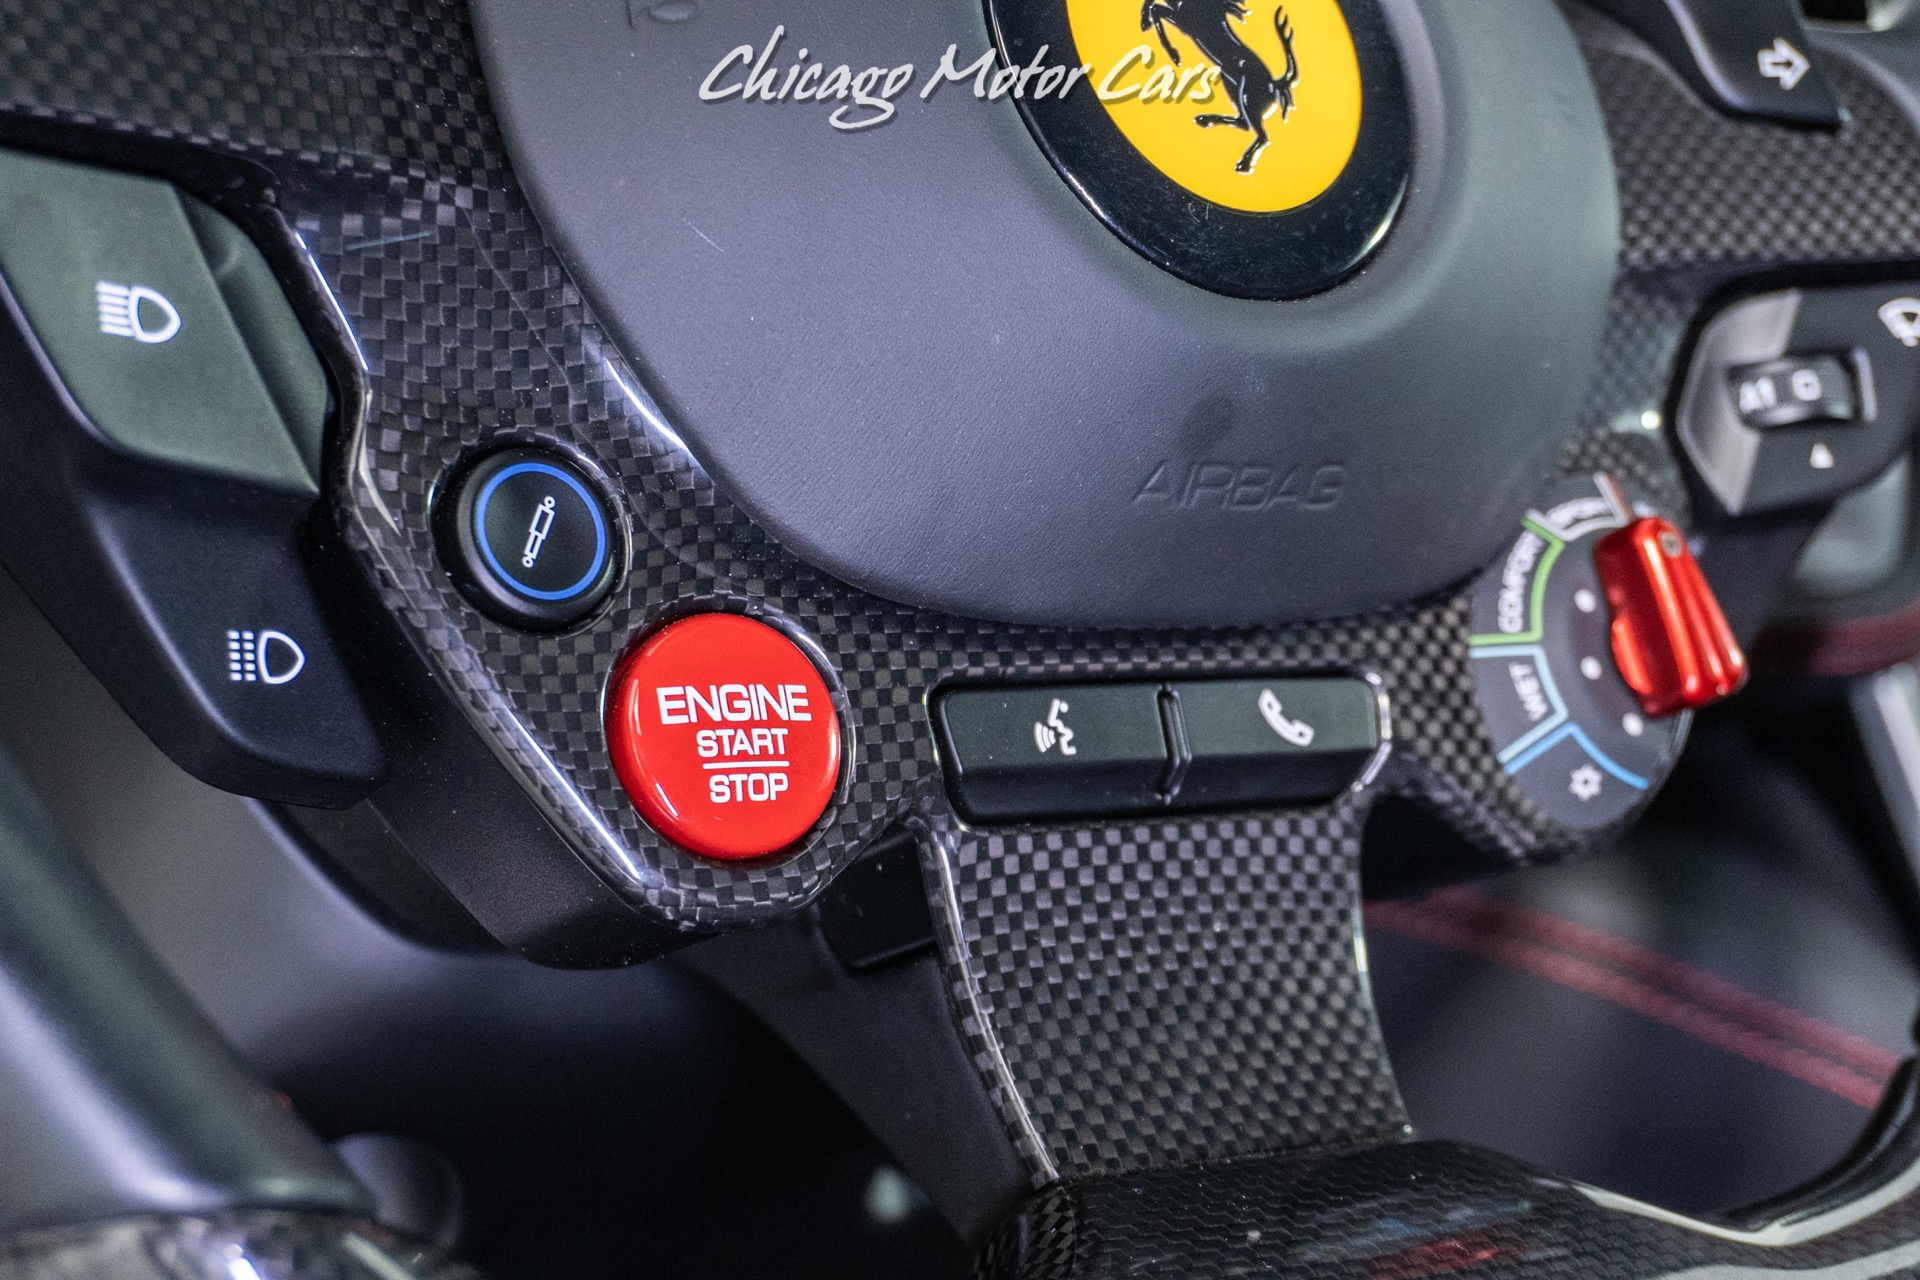 Used-2019-Ferrari-GTC4Lusso-T-ONLY-5K-MILES-REAR-WHEEL-STEERING-LOADED